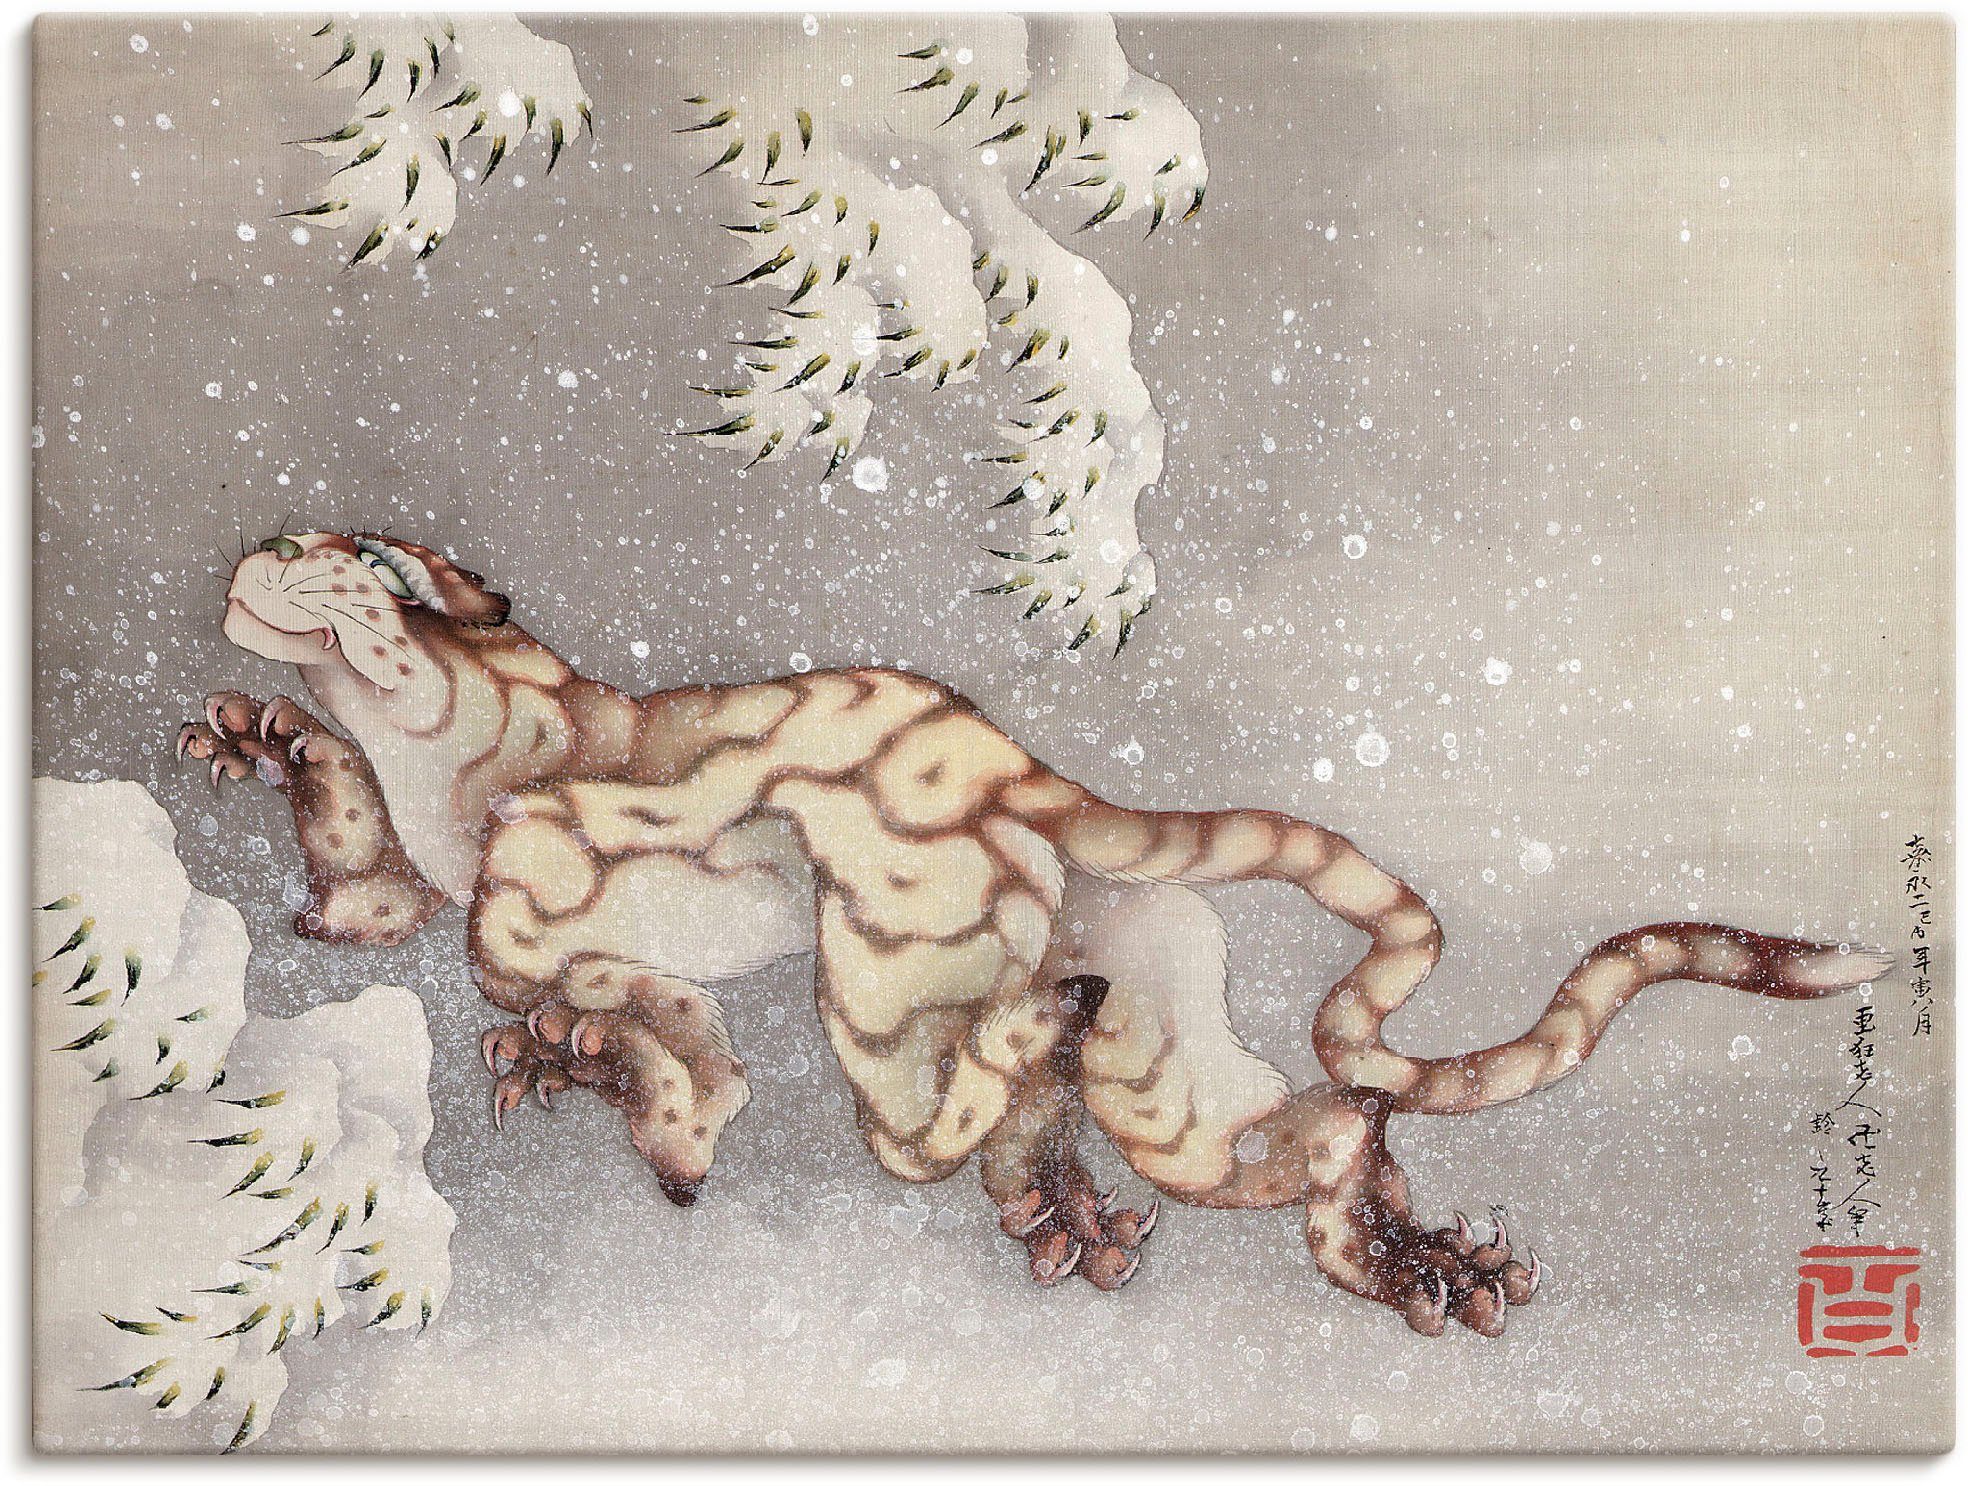 Artland Artprint Tijger in een sneeuwstorm. Edo-tijd in vele afmetingen & productsoorten -artprint op linnen, poster, muursticker / wandfolie ook geschikt voor de badkamer (1 stuk)